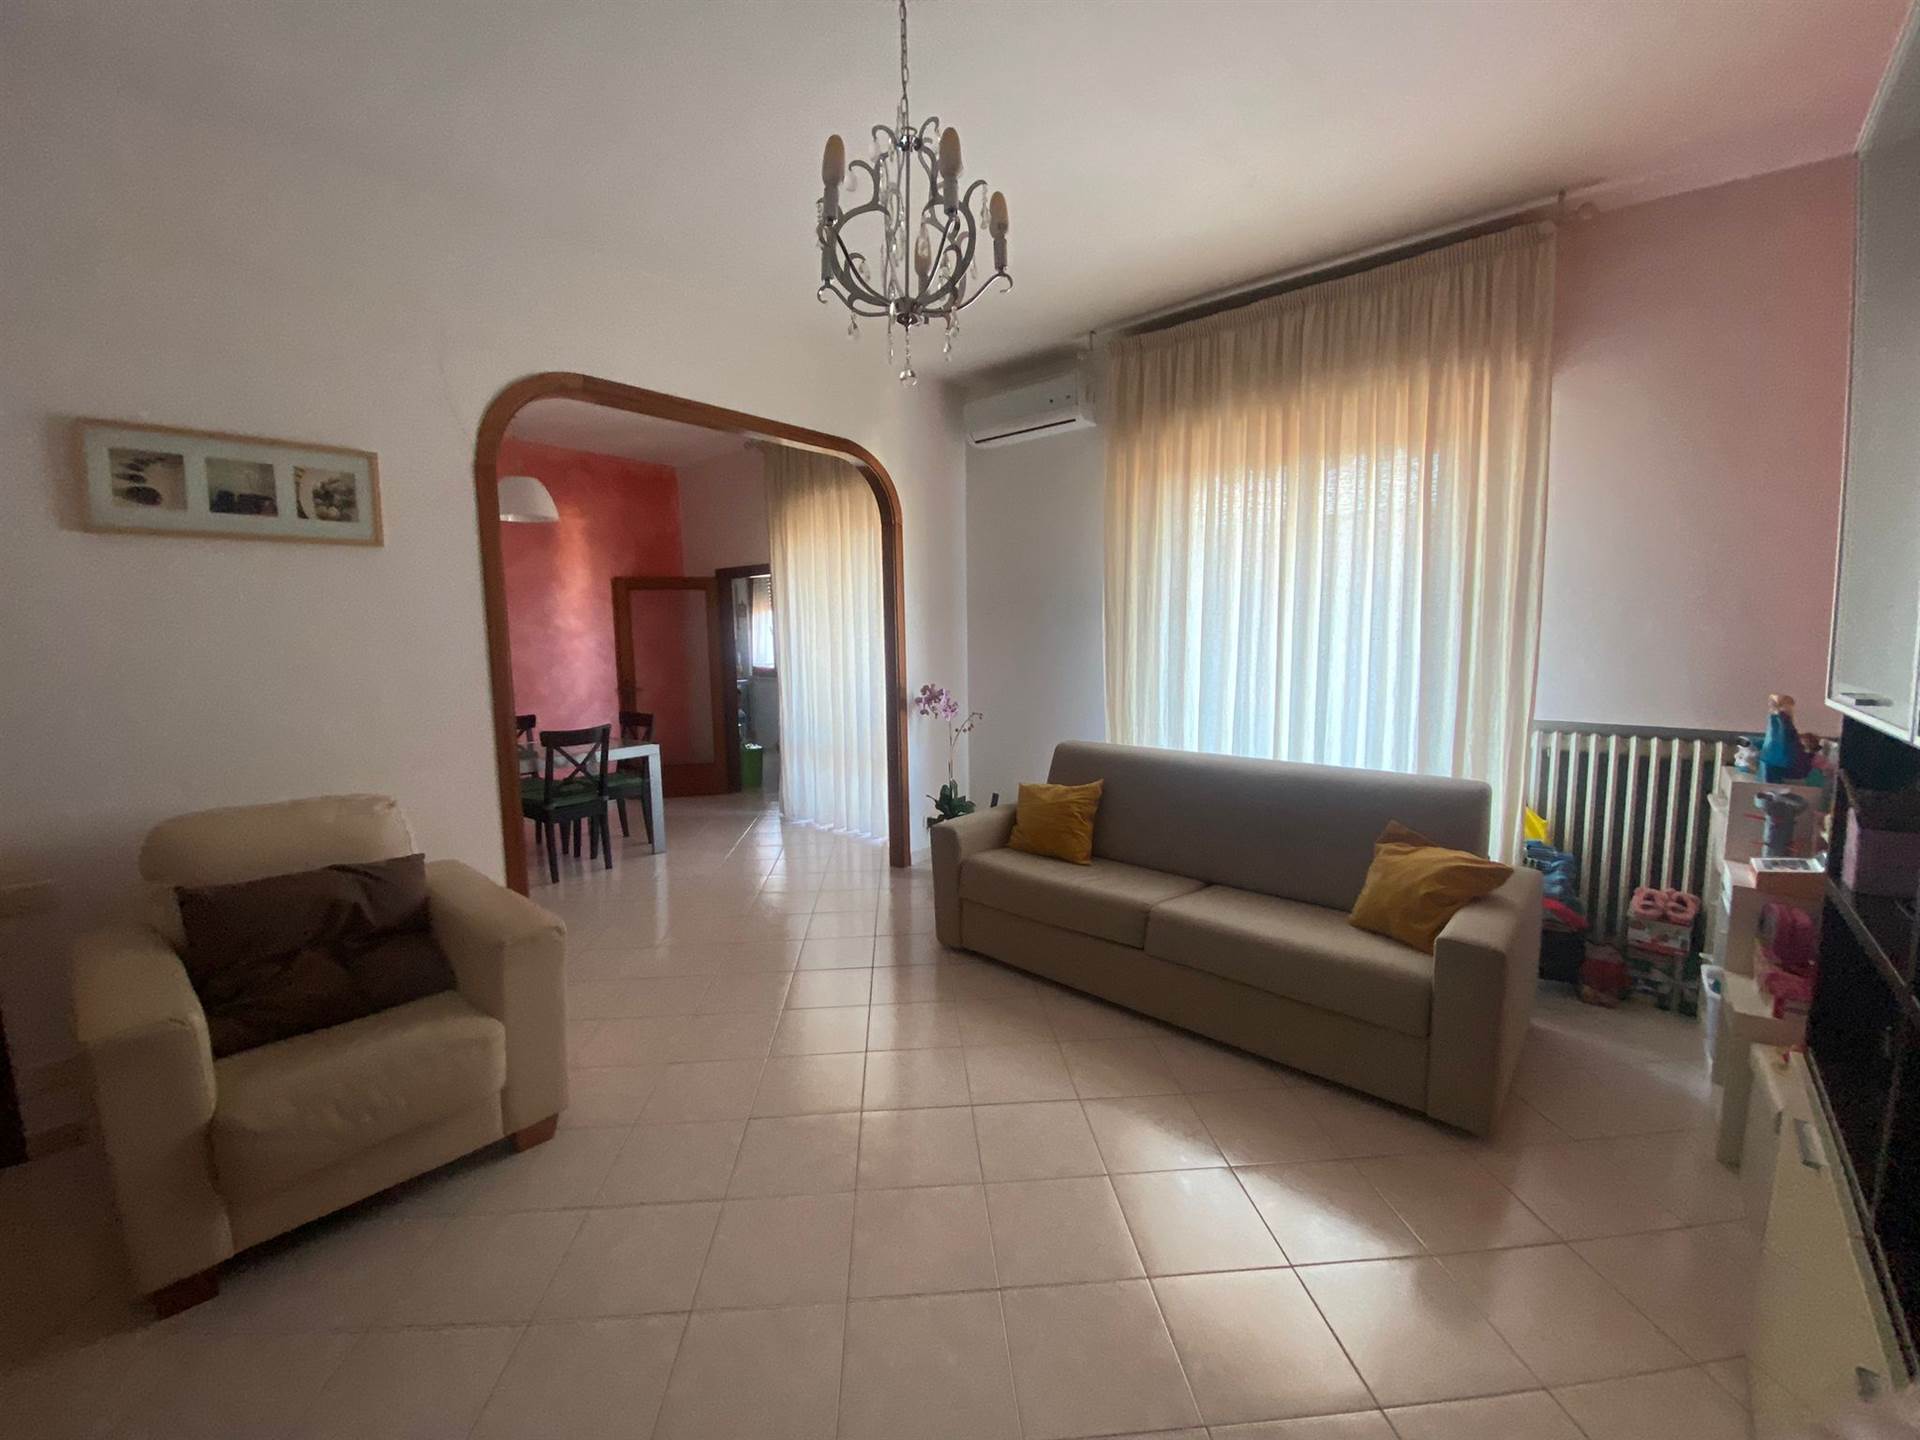 Appartamento in vendita a Certaldo, 6 locali, prezzo € 160.000 | PortaleAgenzieImmobiliari.it